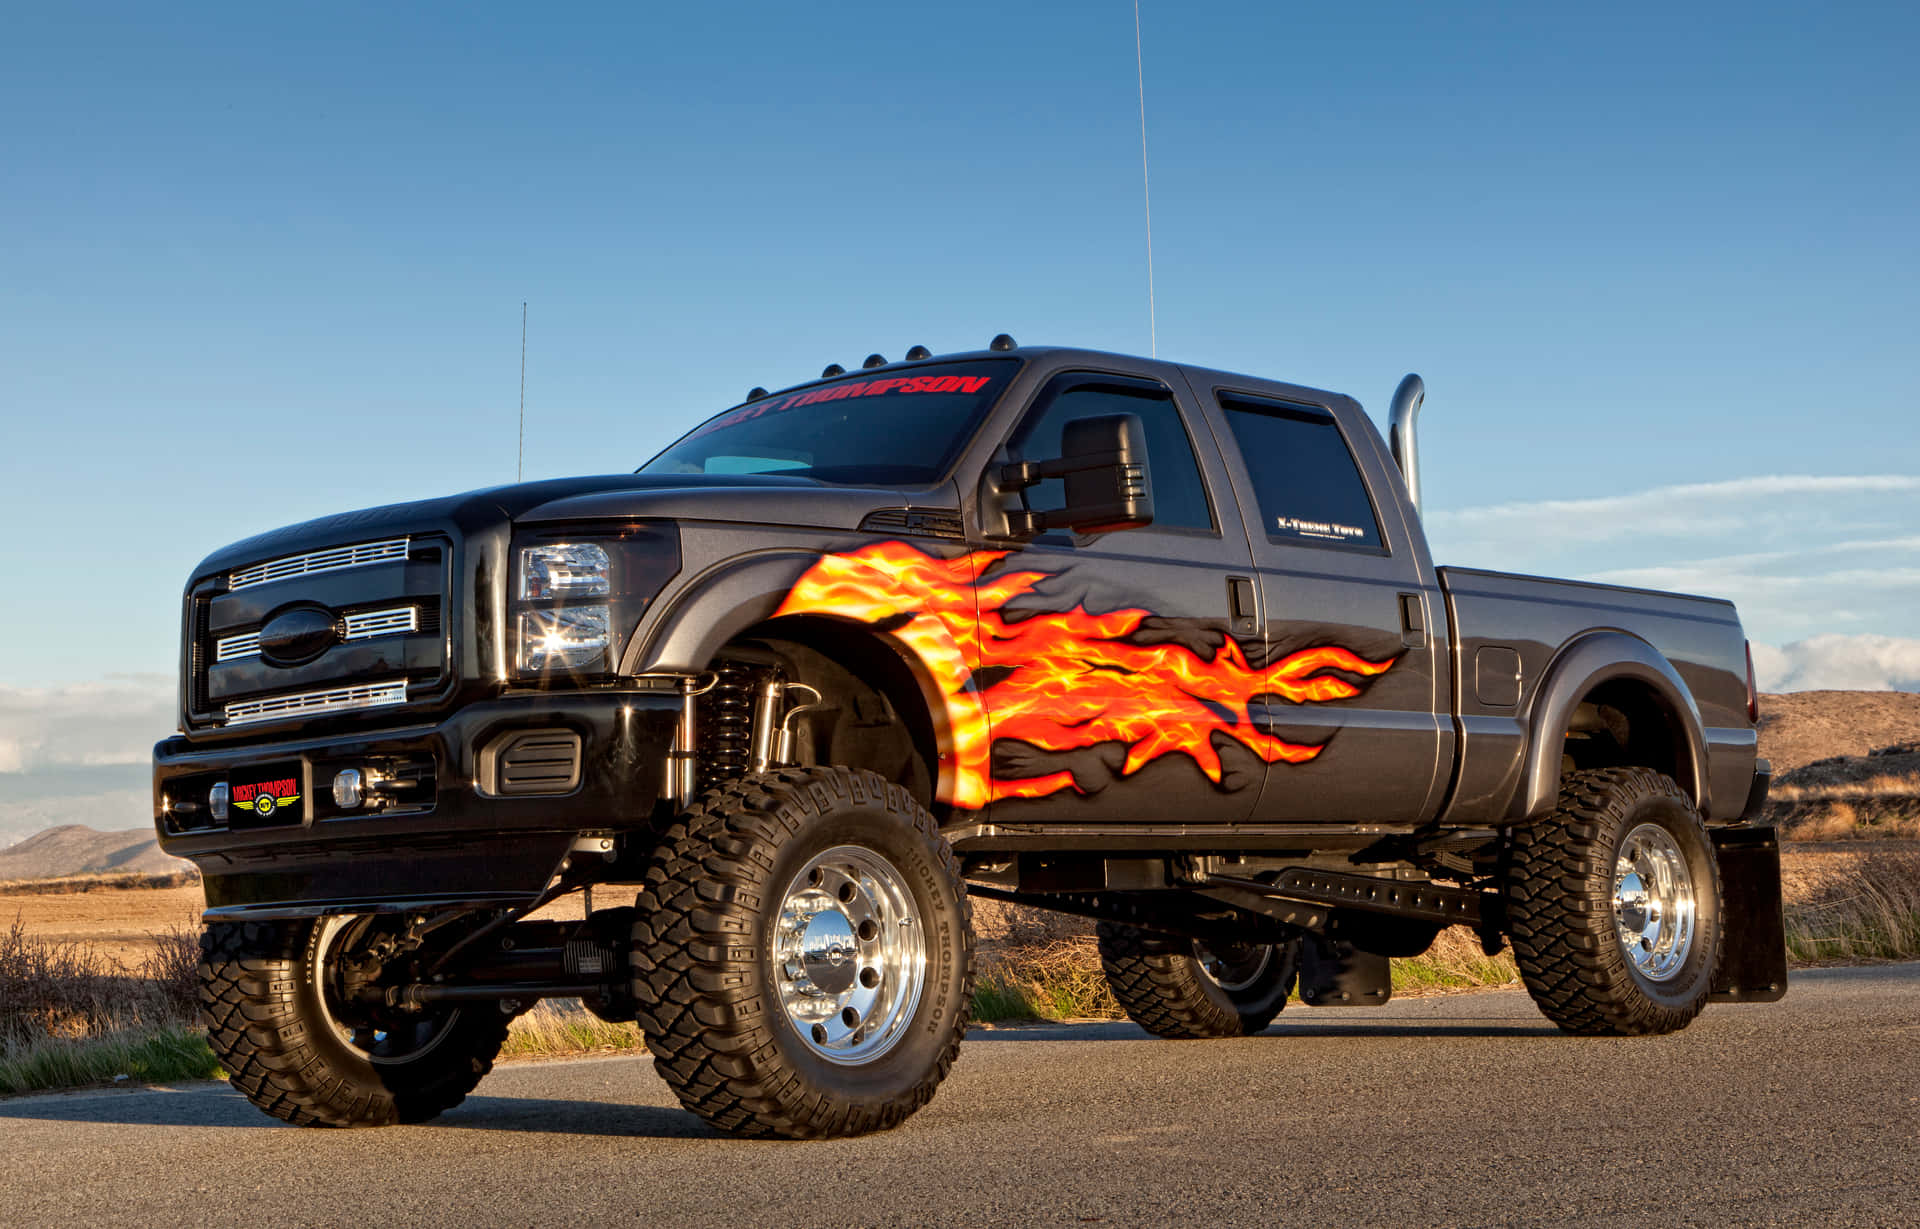 En sort lastbil med ild på det. Wallpaper